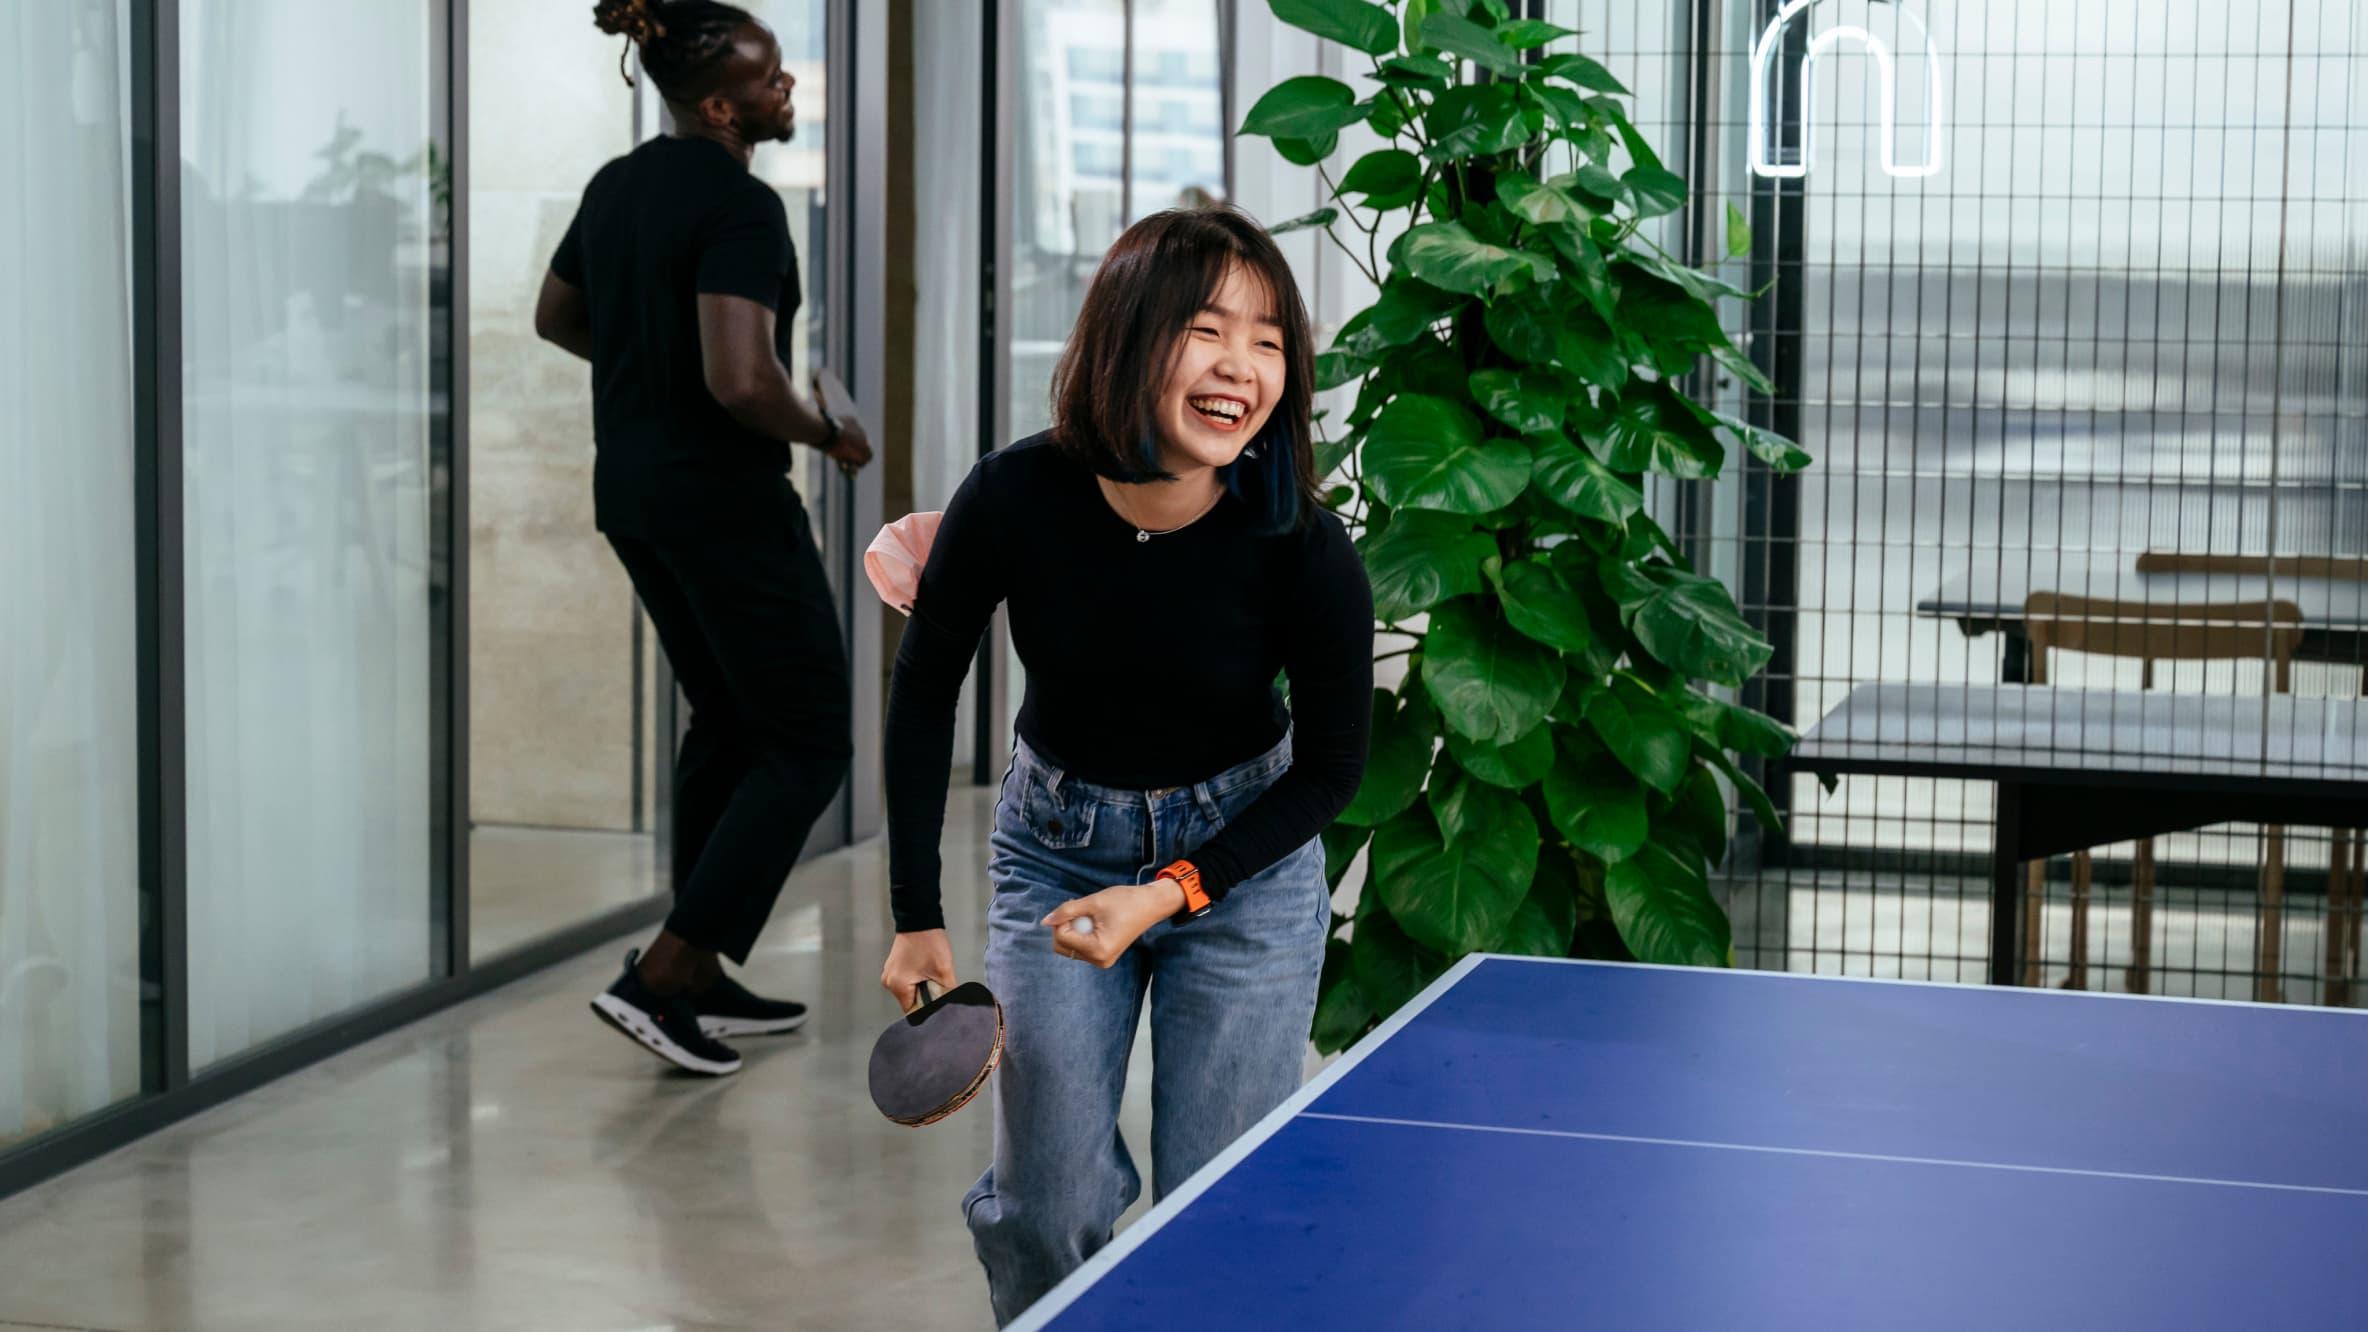 Woman laughing playing ping pong